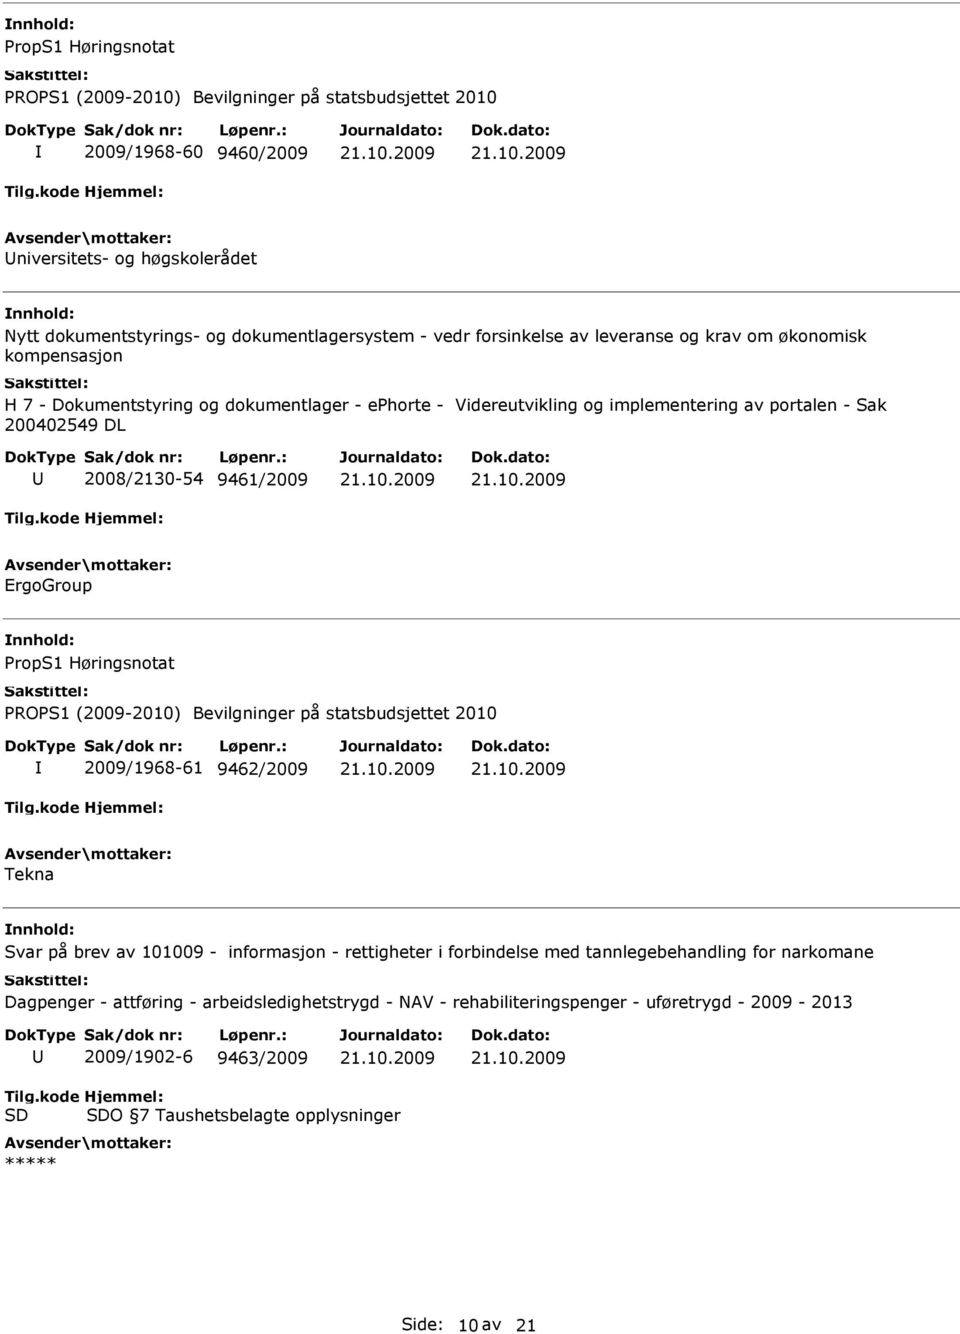 Høringsnotat 2009/1968-61 9462/2009 Tekna Svar på brev av 101009 - informasjon - rettigheter i forbindelse med tannlegebehandling for narkomane Dagpenger - attføring -